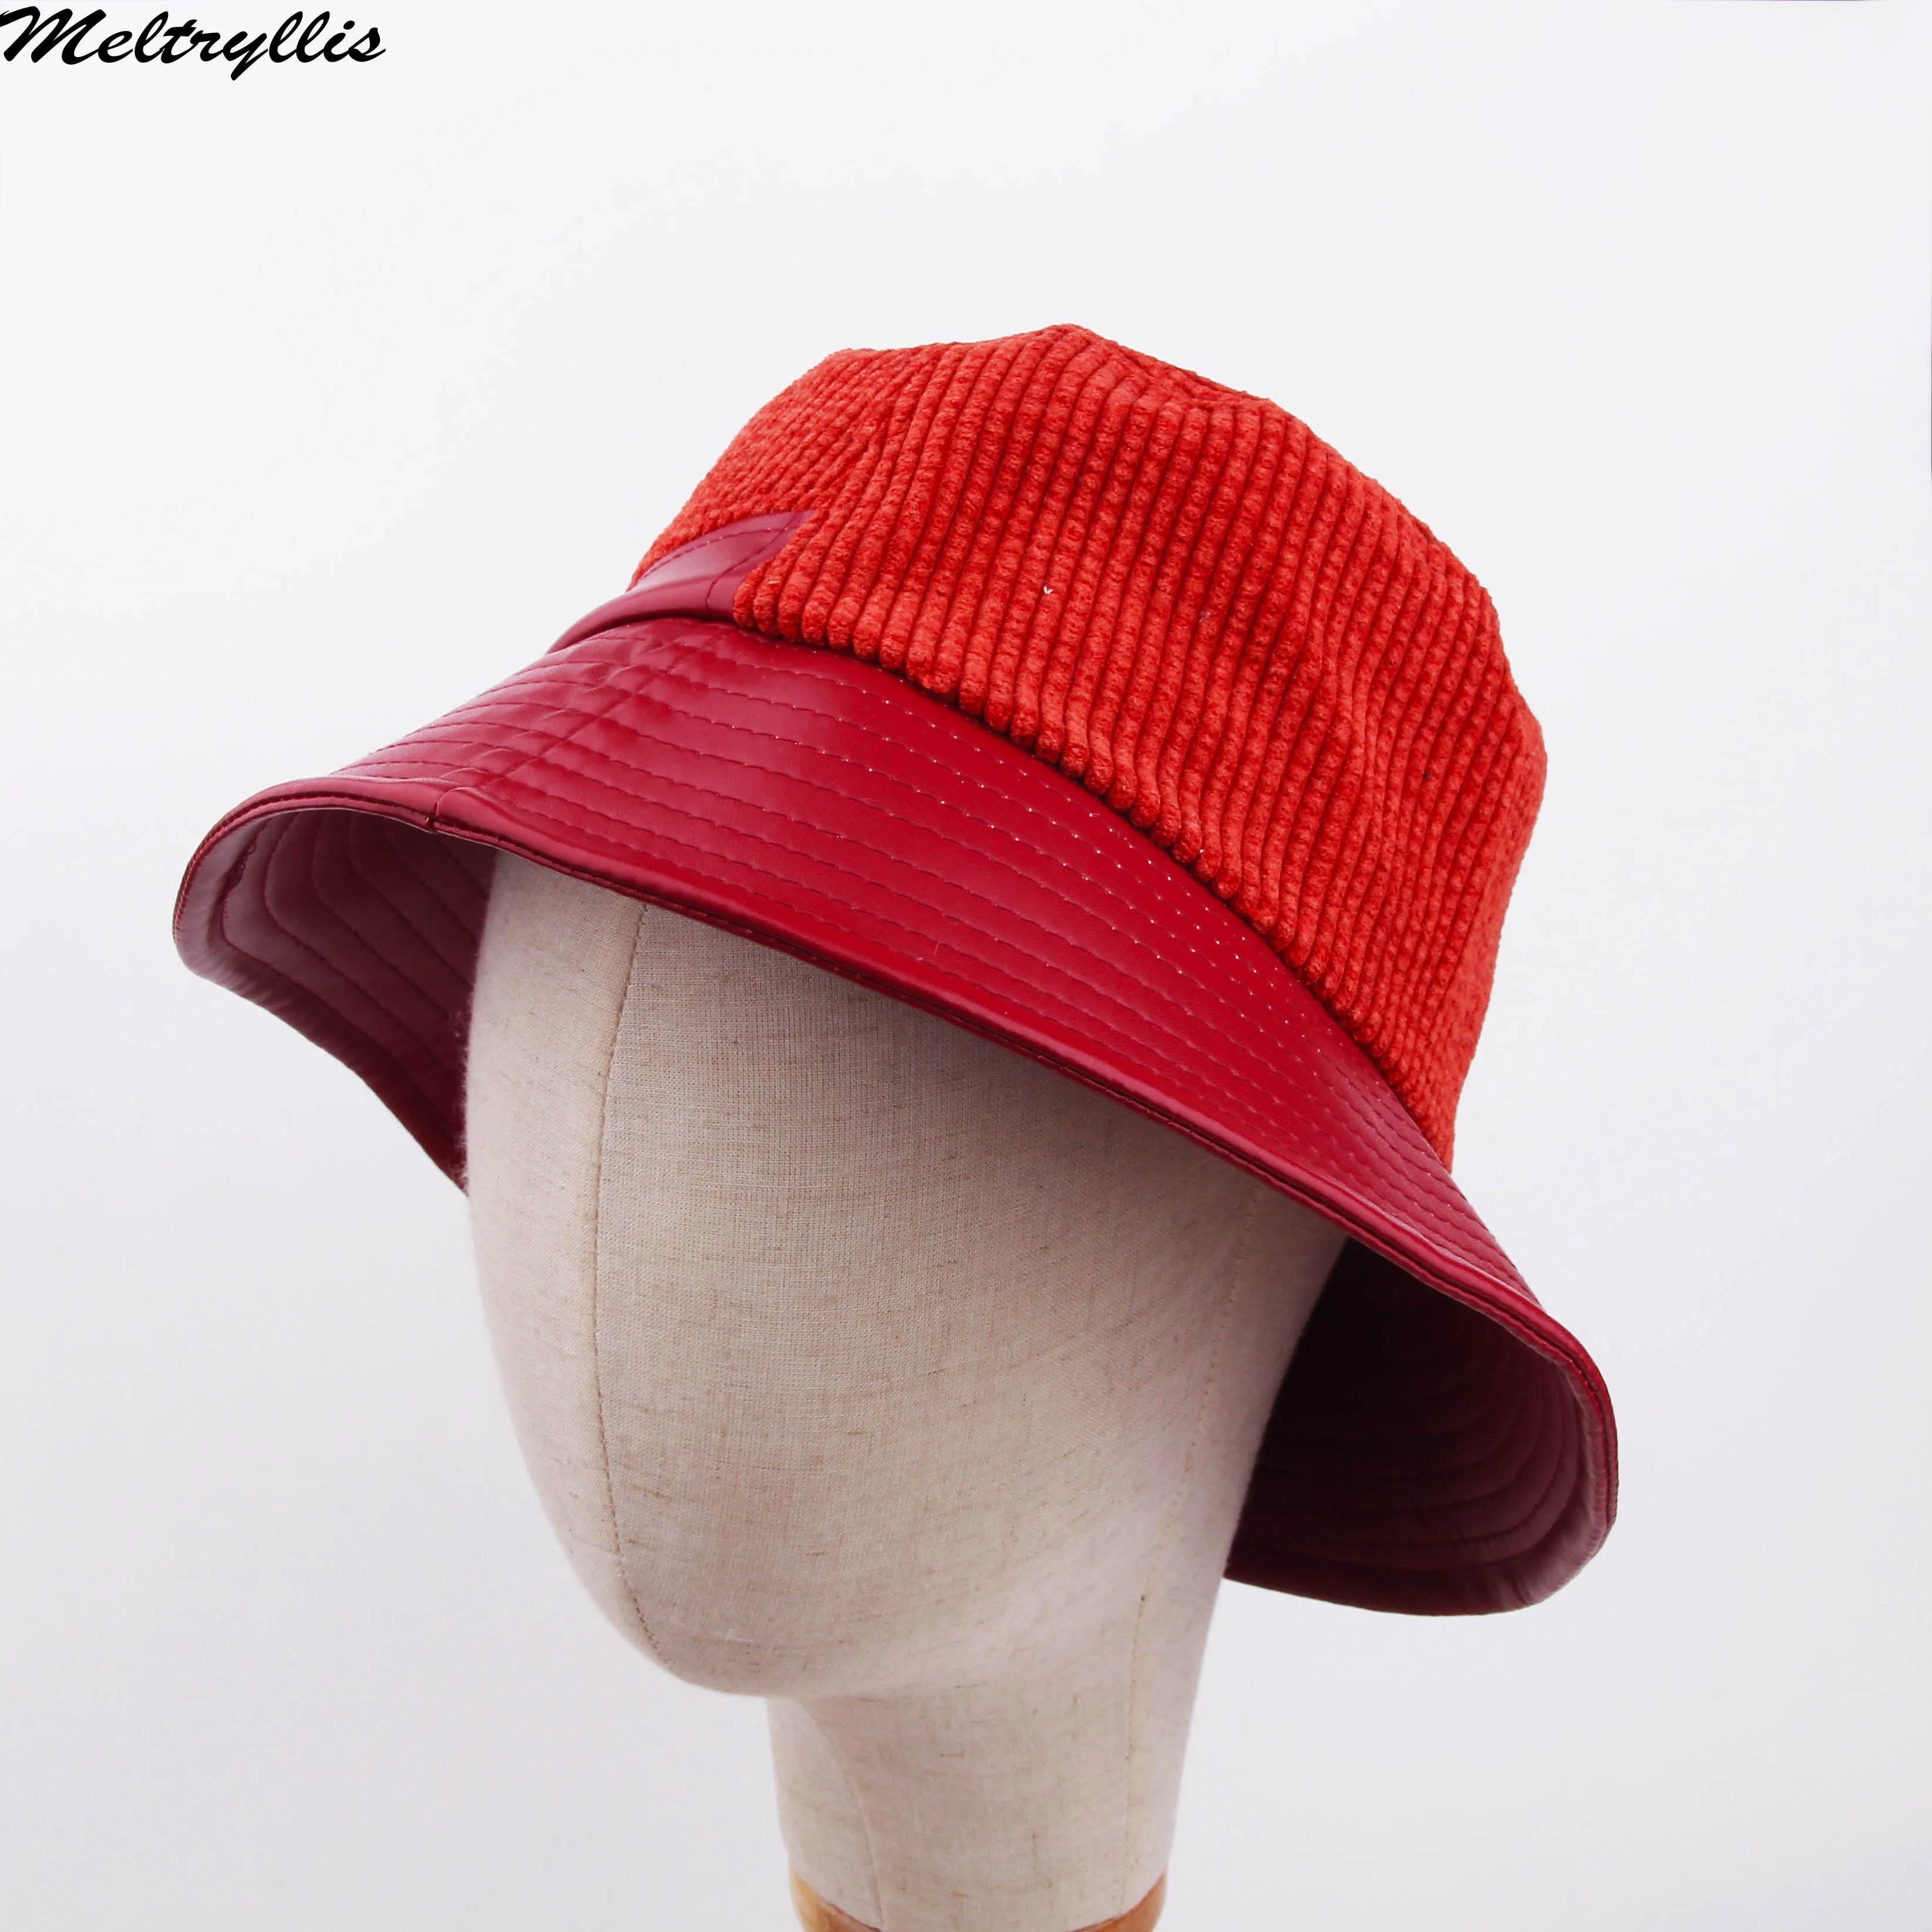 [Meltryllis] искусственная кожа вельвет Твердые Теплые две стороны ведро шляпа рыбака Шляпа От Солнца кепки для мужчин и женщин унисекс модные кепки s